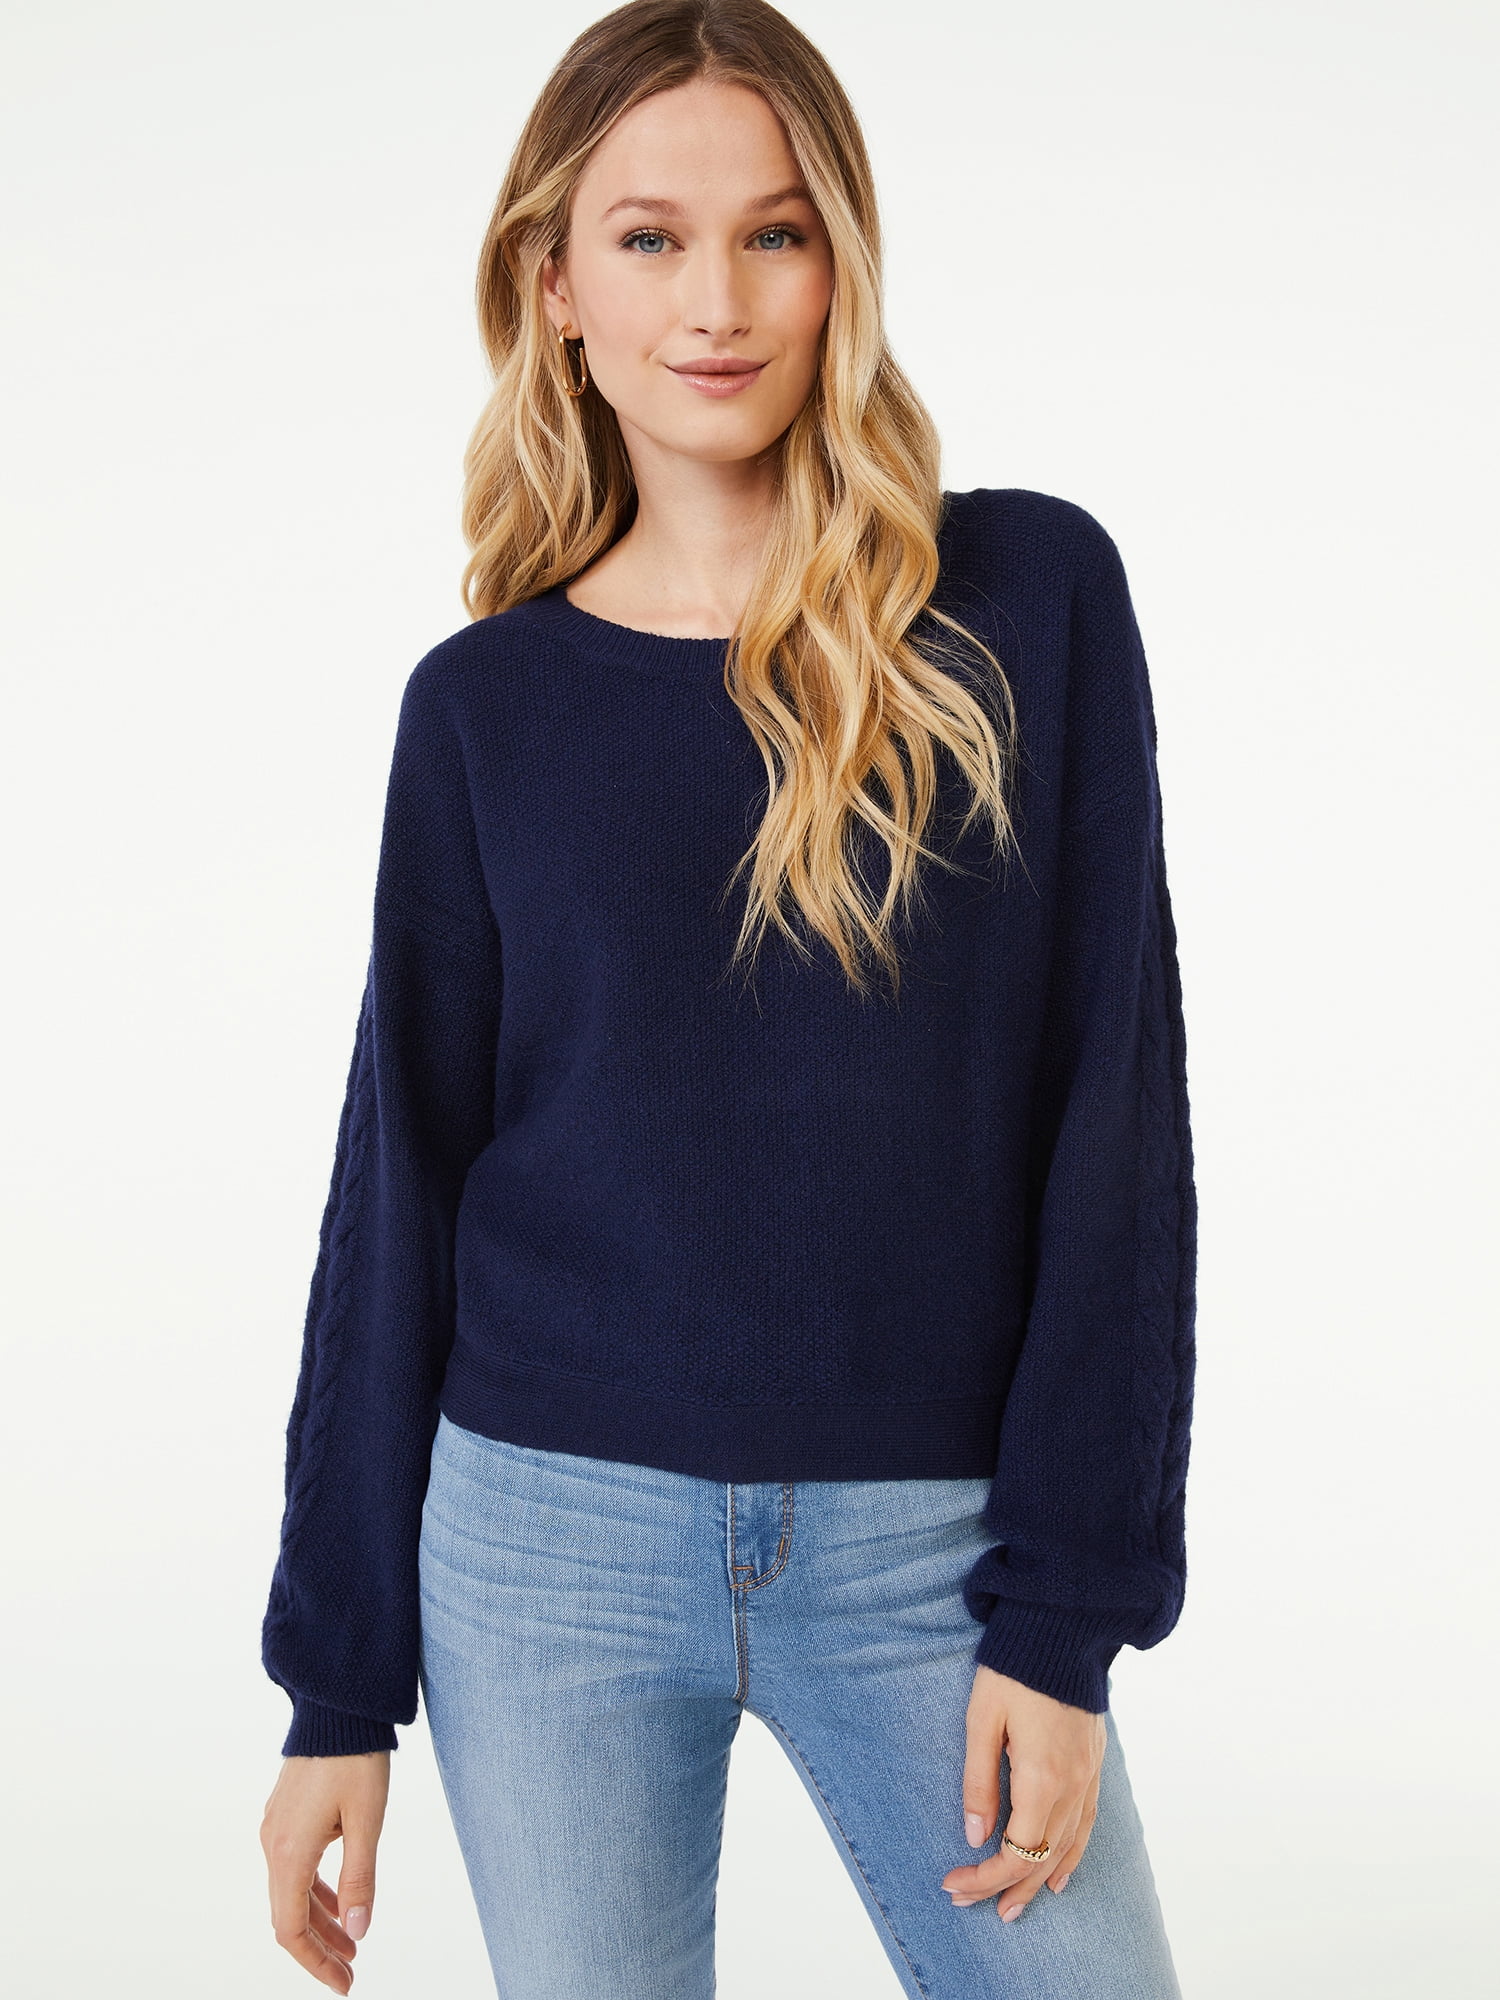 Scoop Women's Puff Sleeve Sweater with Cross Back Tie - Walmart.com